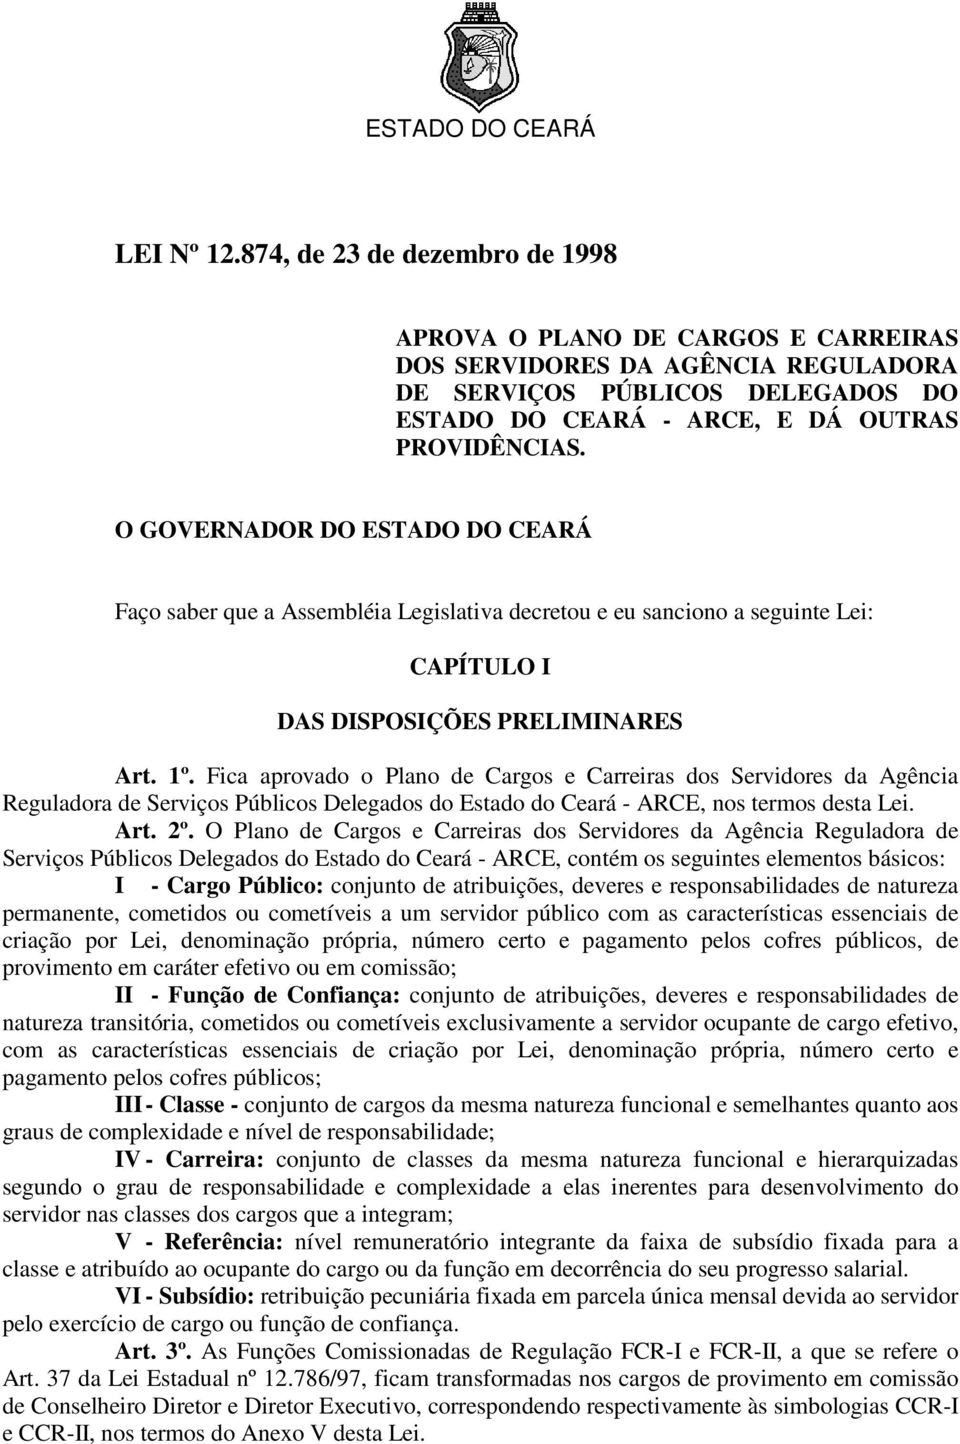 Fica aprovado o Plano de Cargos e Carreiras dos Servidores da Agência Reguladora de Serviços Públicos Delegados do Estado do Ceará - ARCE, nos termos desta Lei. Art. 2º.